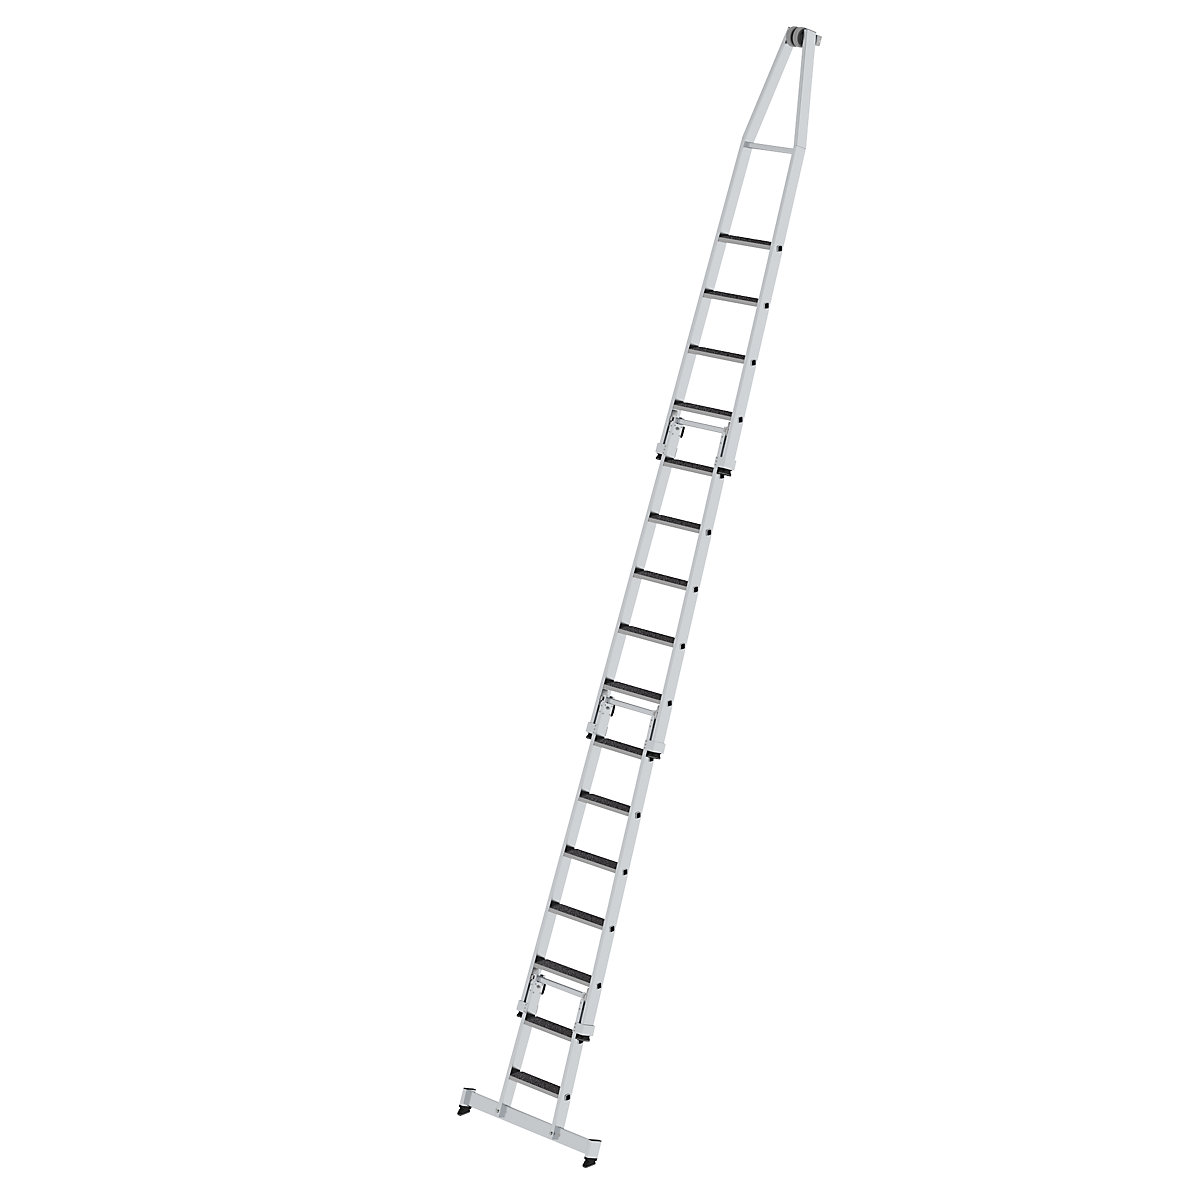 Escada para limpar vidros – MUNK, com apoio para os pés, 4 peças, 16 degraus-7